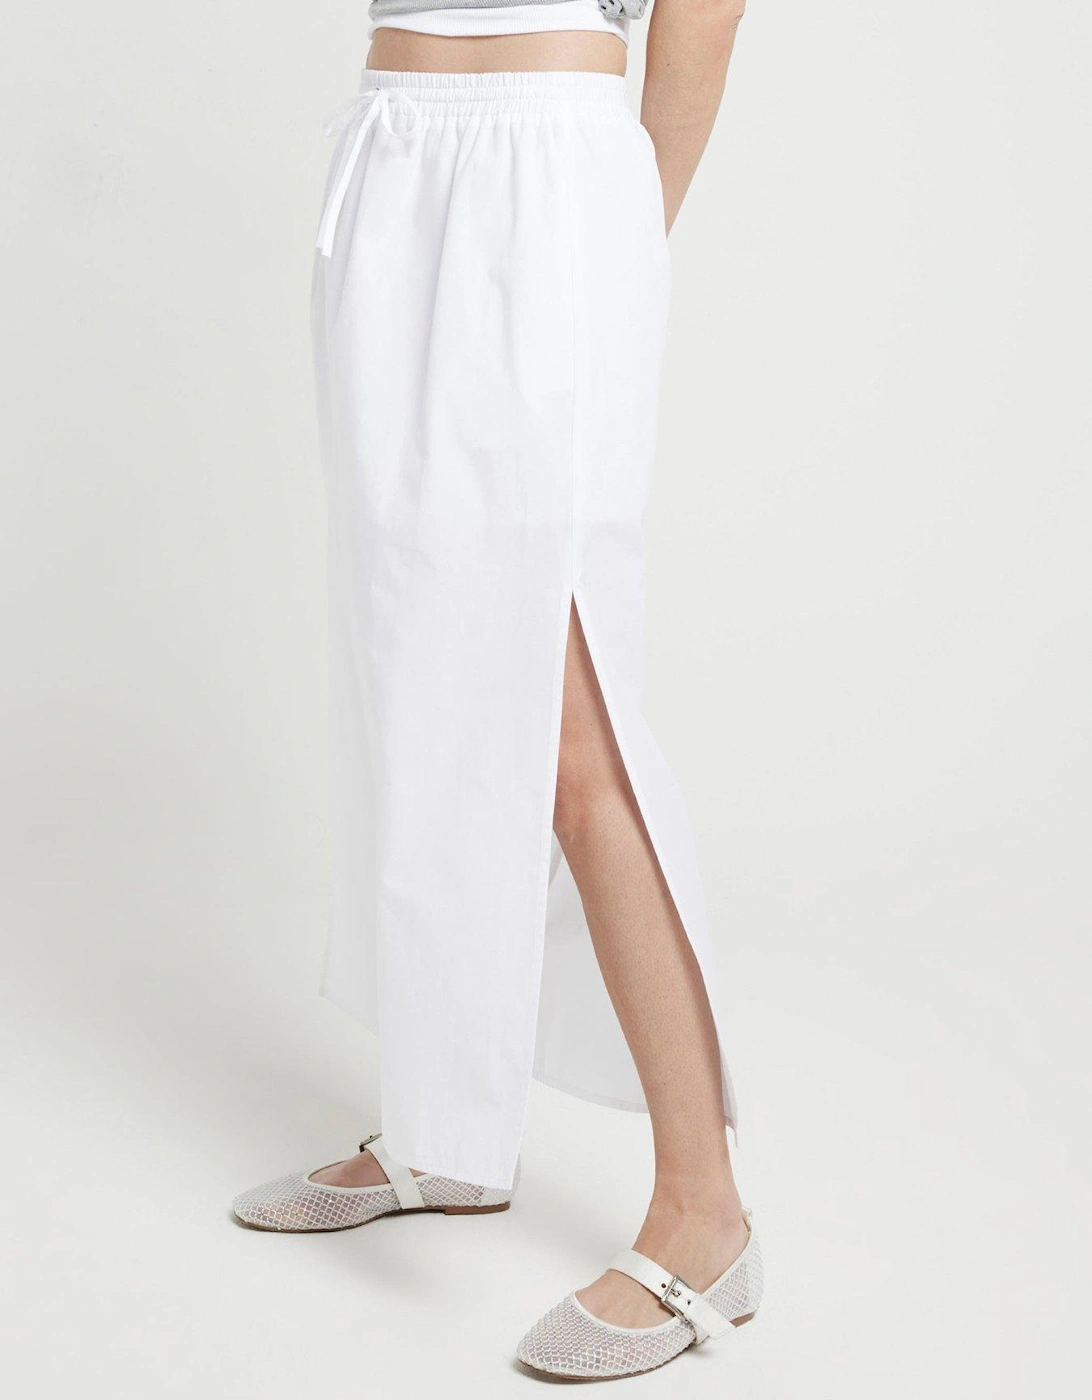 Linen Maxi Skirt - White, 2 of 1